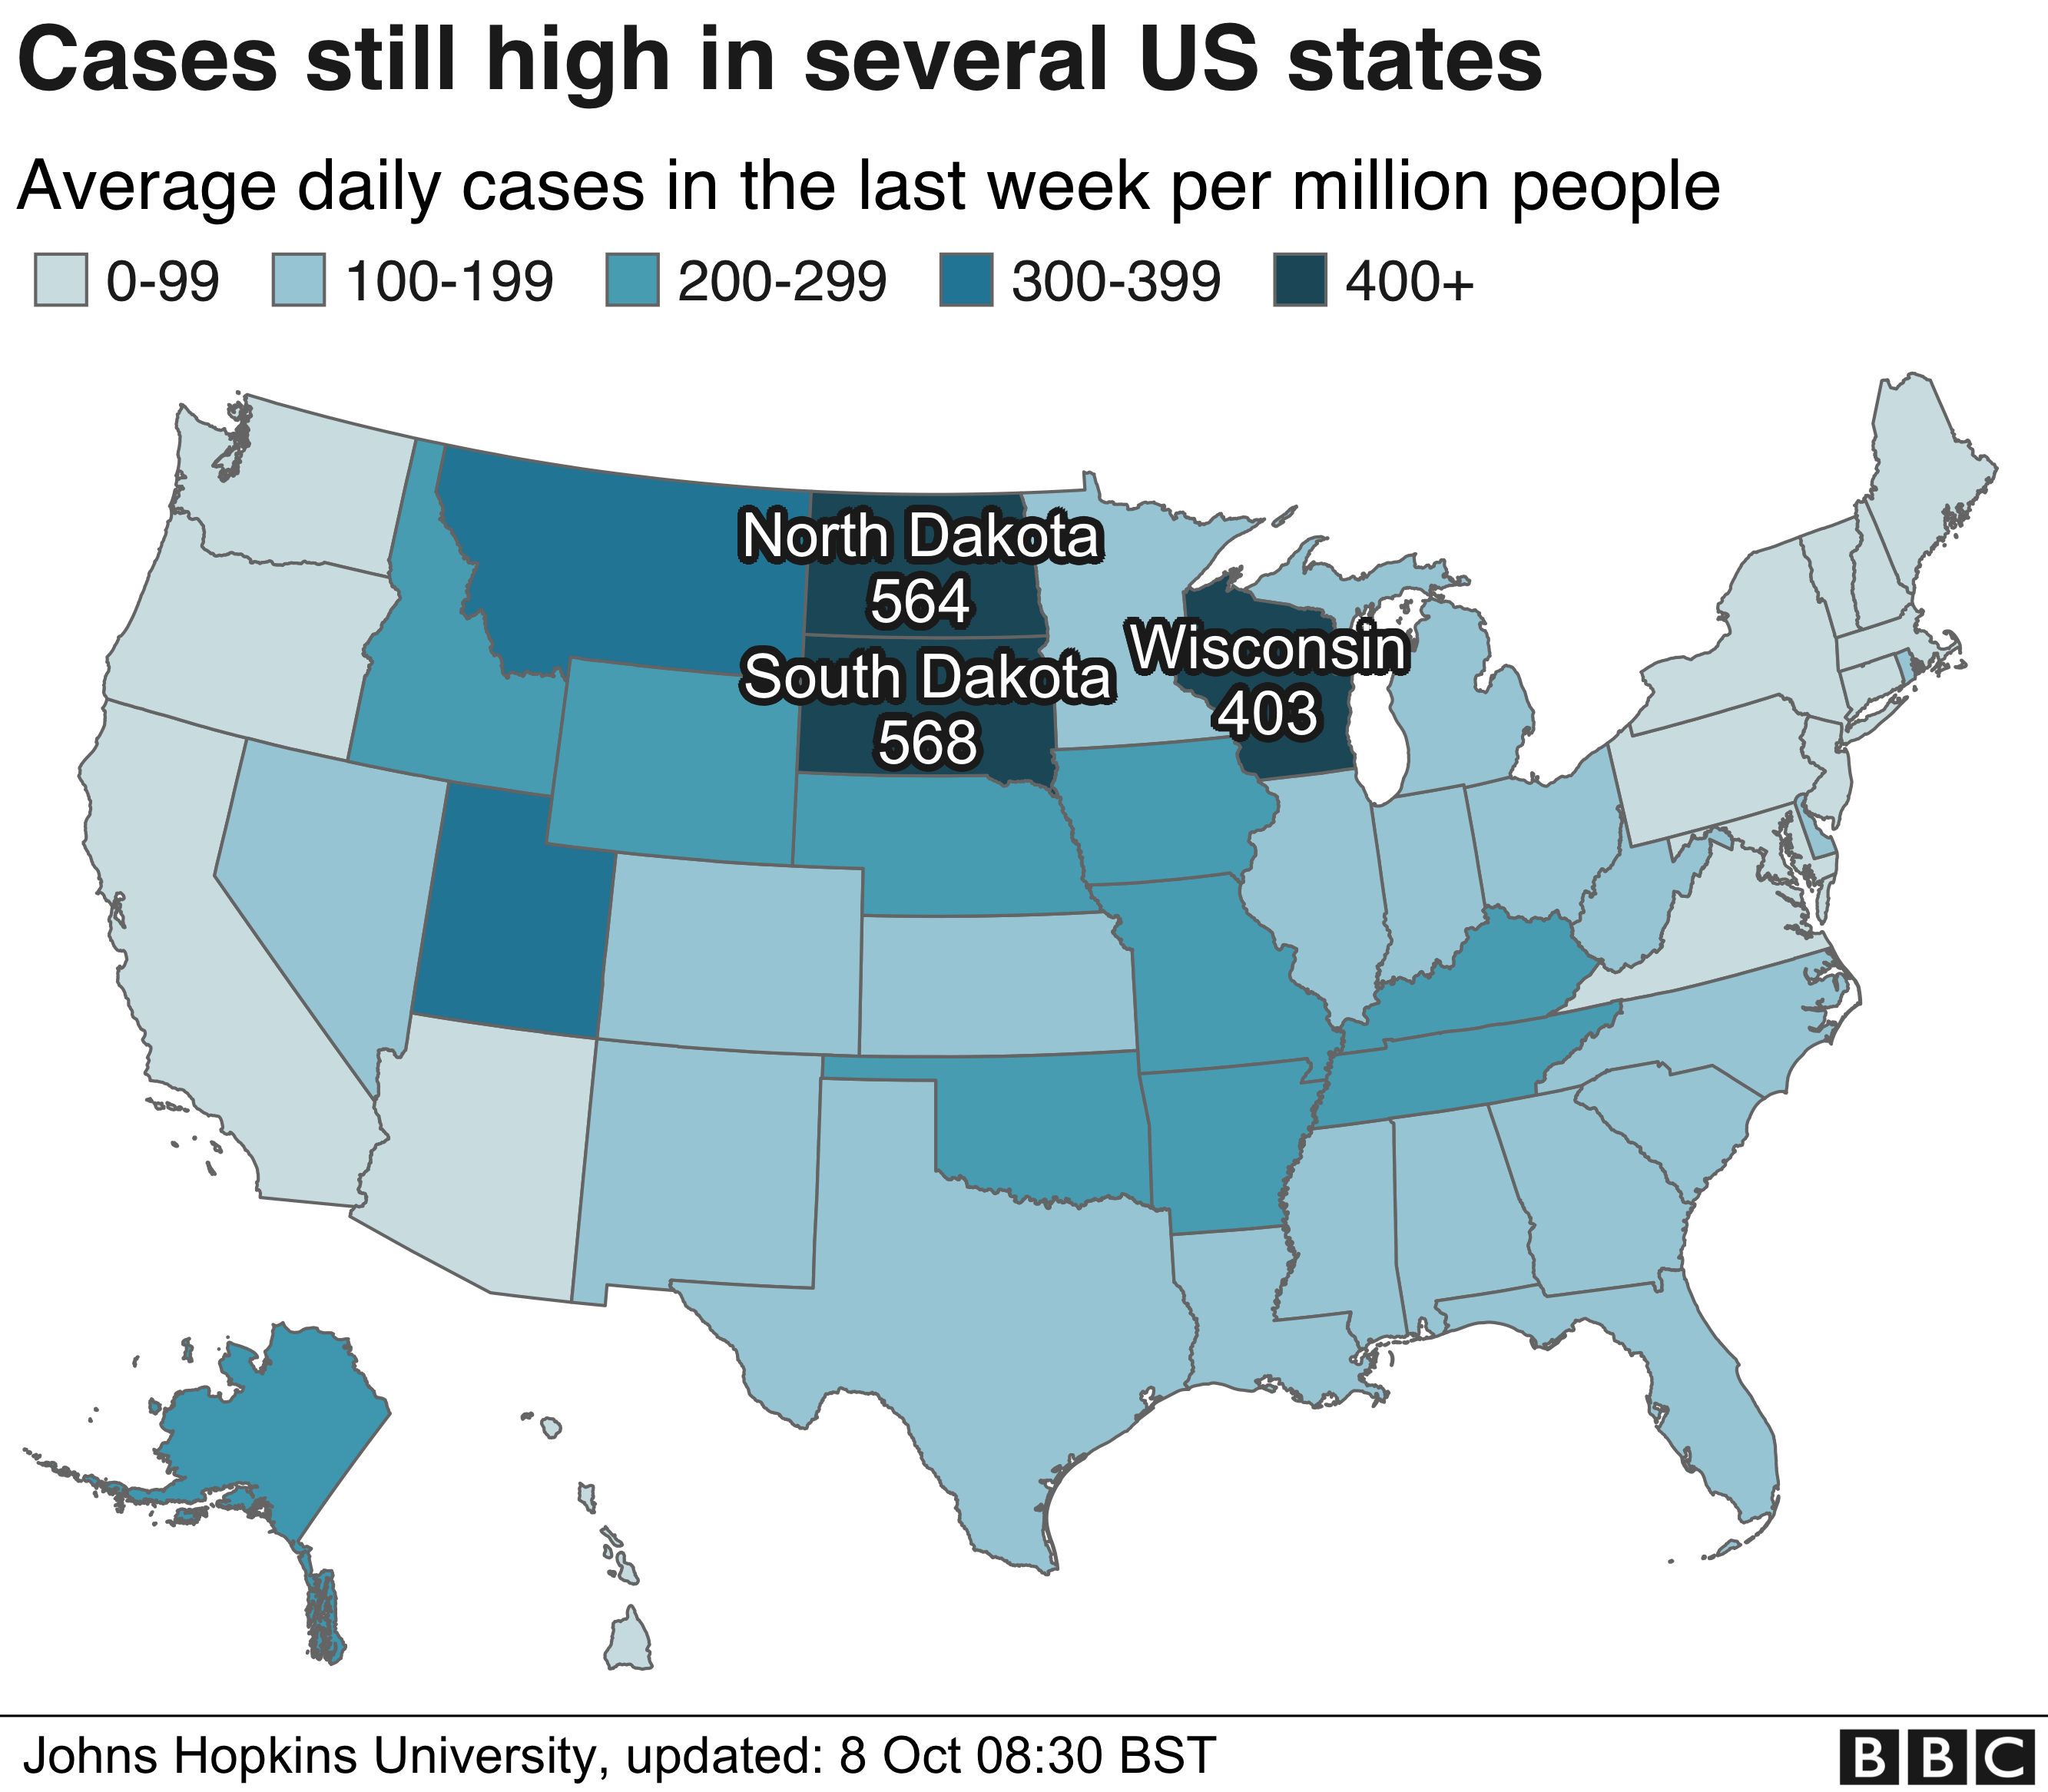 Karte mit der durchschnittlichen Anzahl der täglichen Fälle in der letzten Woche pro Million Einwohner nach Bundesstaaten. South Dakota, North Dakota und Wisconsin haben derzeit die höchsten Zahlen.